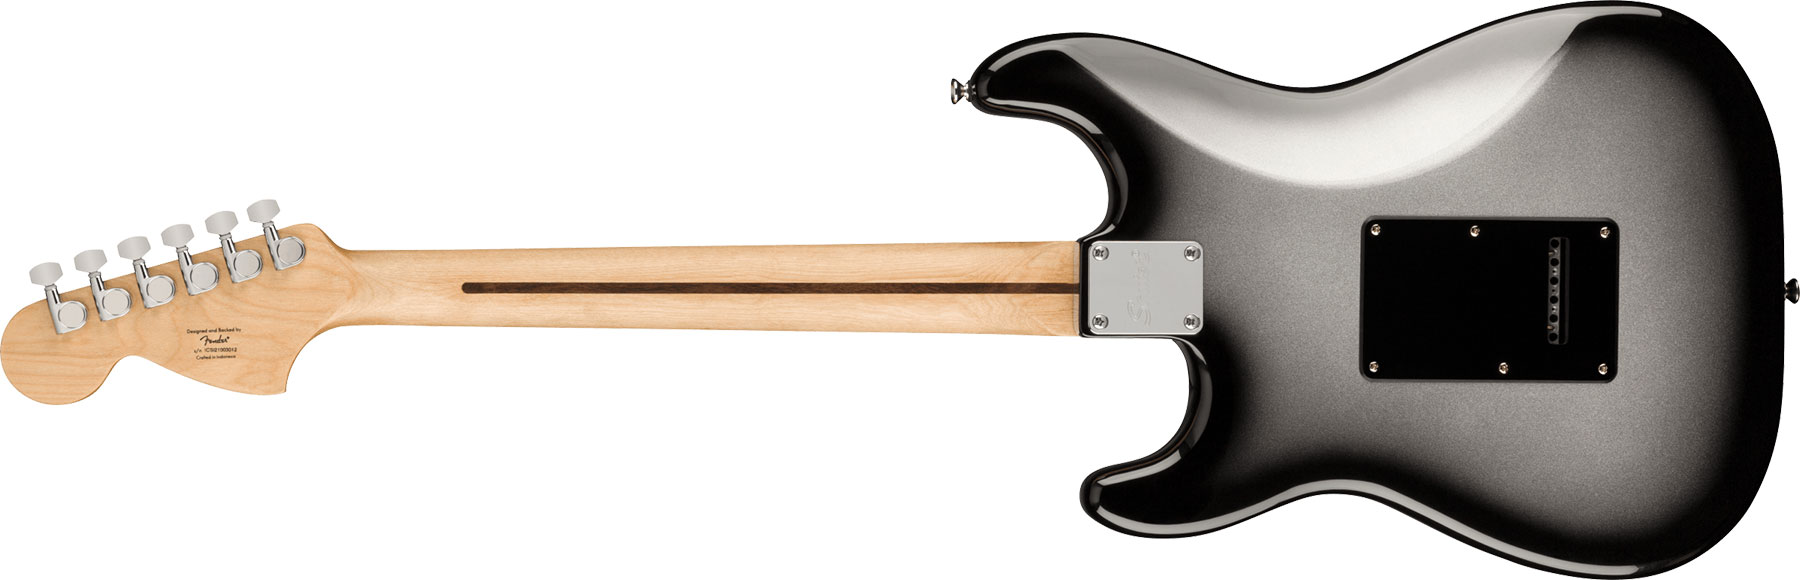 Squier Strat Affinity Fsr Ltd Hss Trem Lau - Silverburst - E-Gitarre in Str-Form - Variation 1